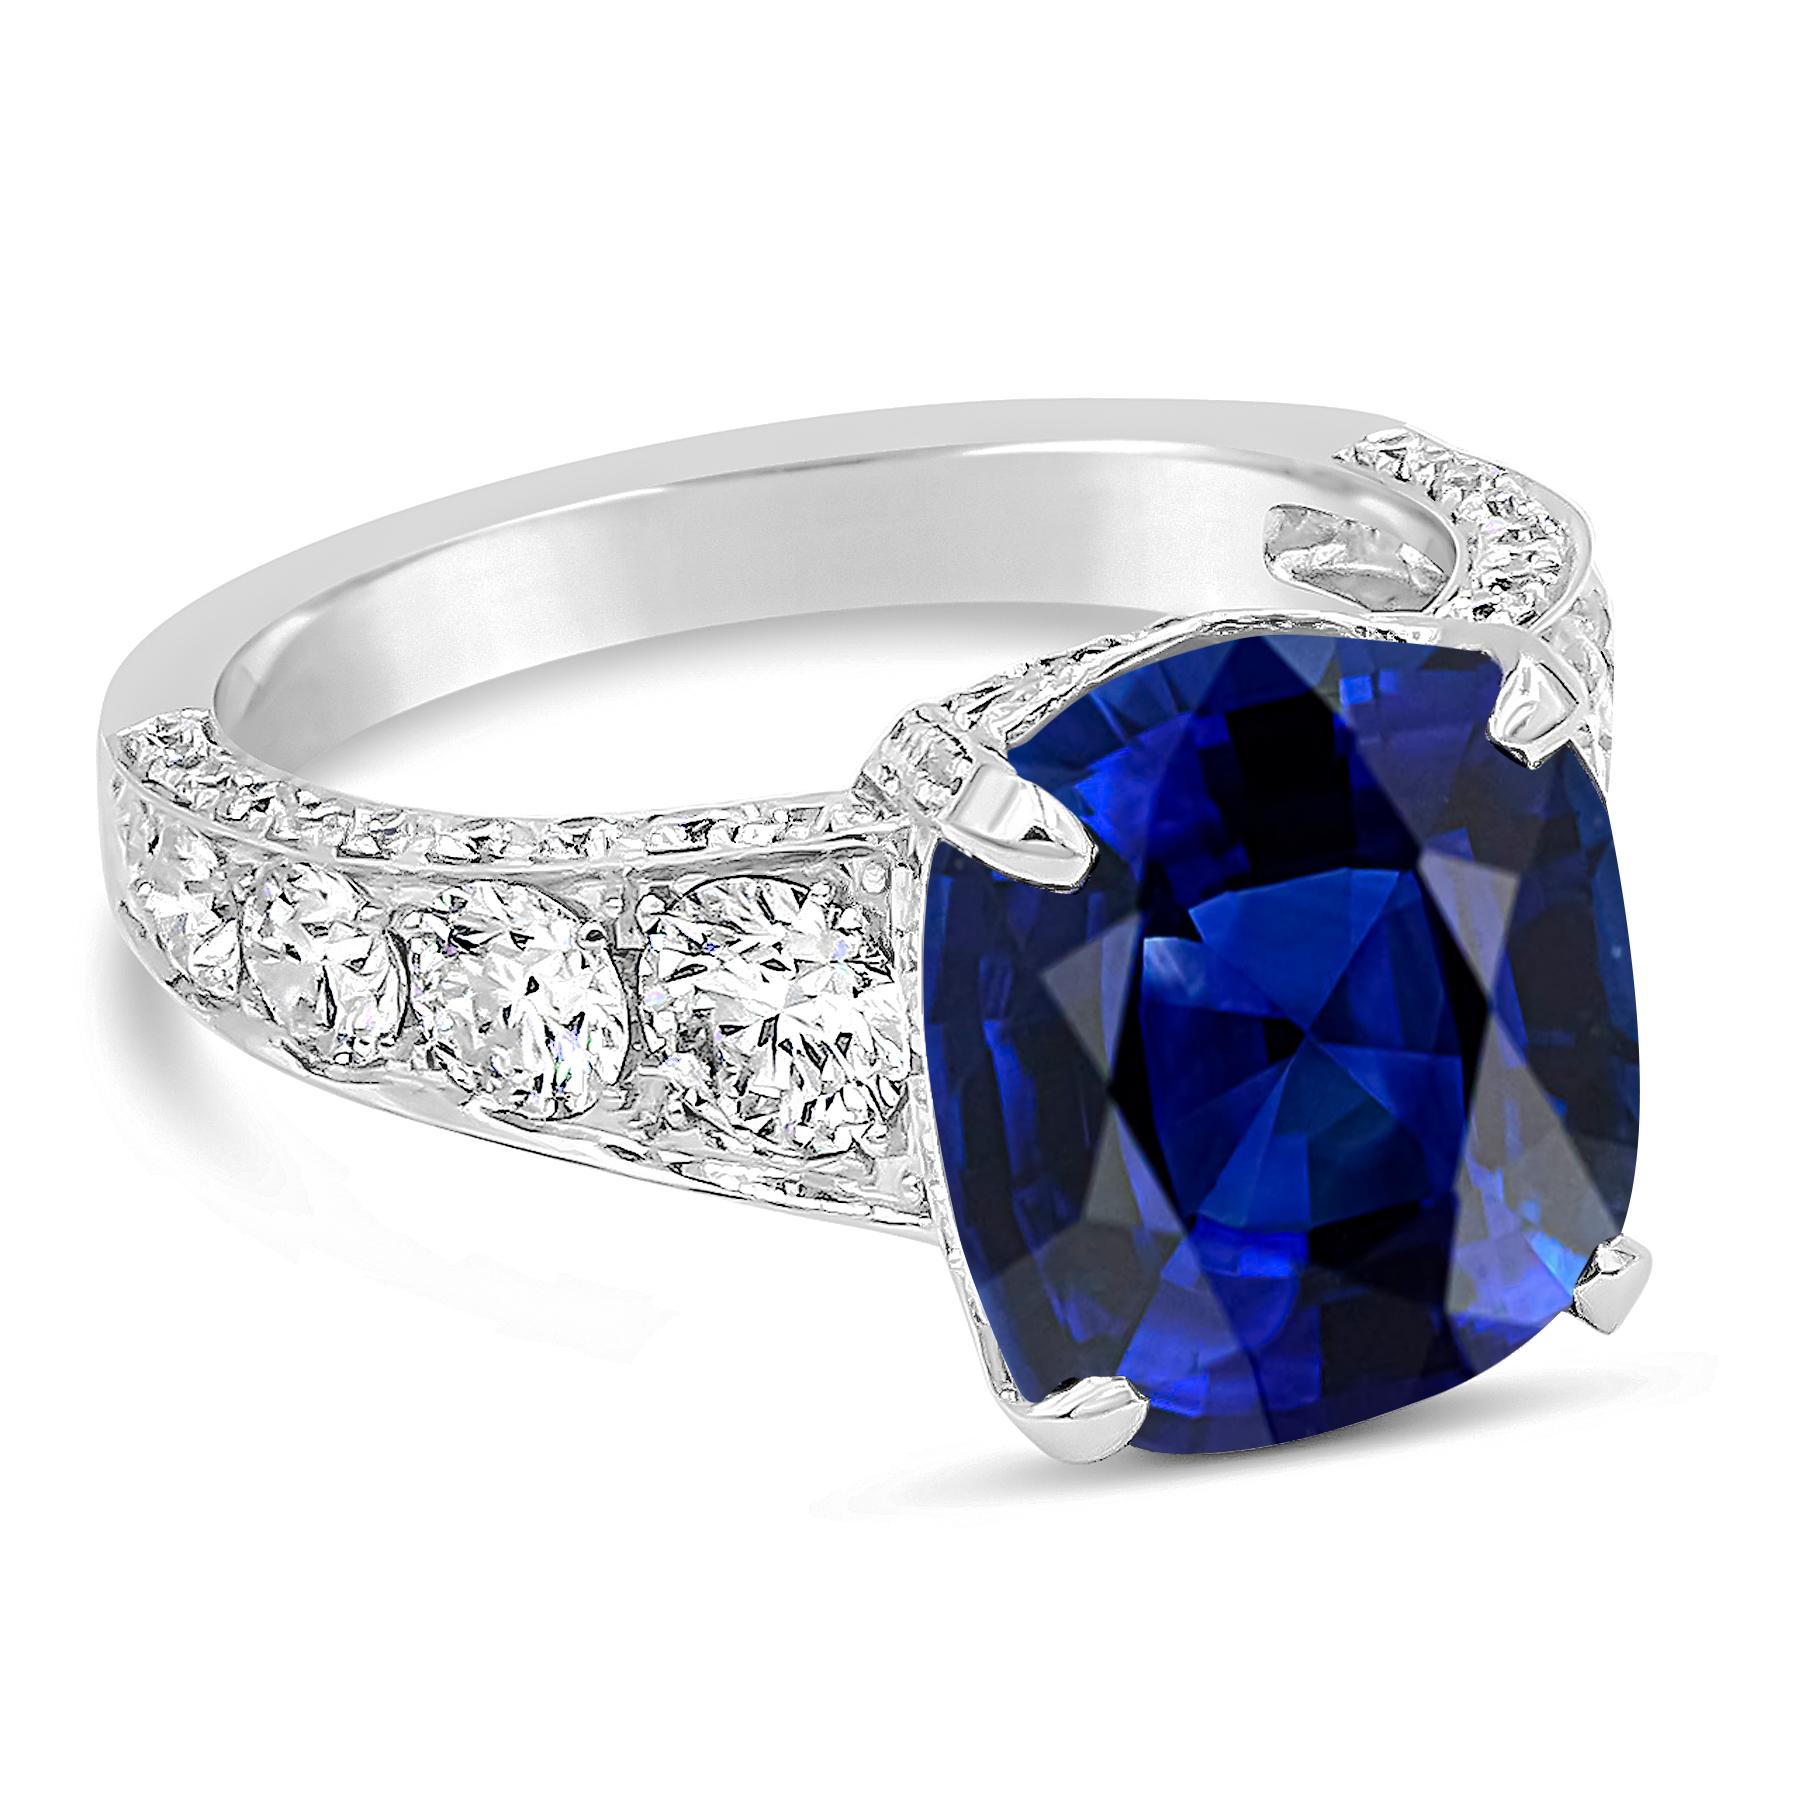 Une bague de fiançailles attrayante et exquise mettant en valeur un saphir bleu vif d'origine sri-lankaise certifié GRS pesant 7,66 carats au total, de couleur bleu royal. Elle est rehaussée de diamants ronds graduellement brillants sertis sur la